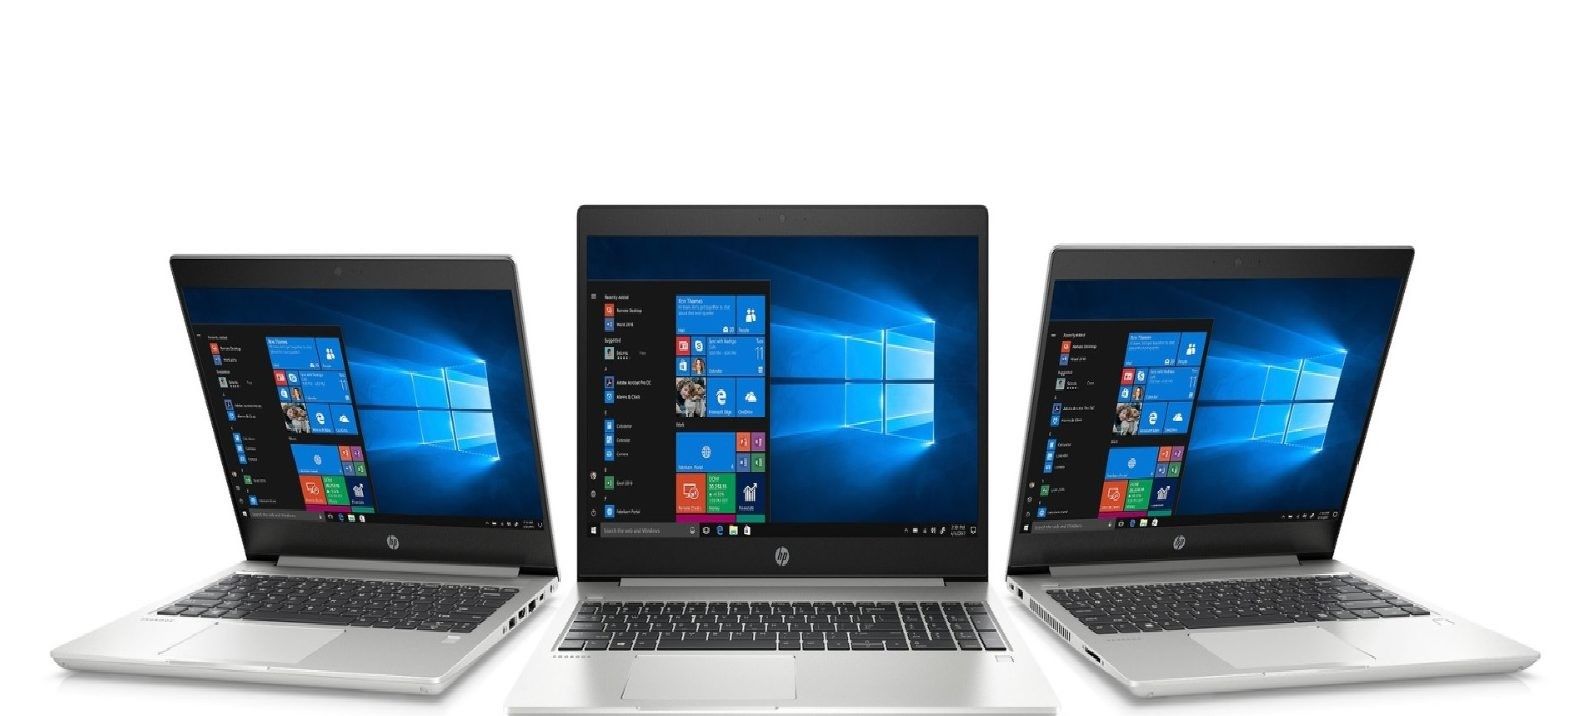 HP ProBook 430, 440, 450 G6 Notebook Review: Godt valg for profesjonelle